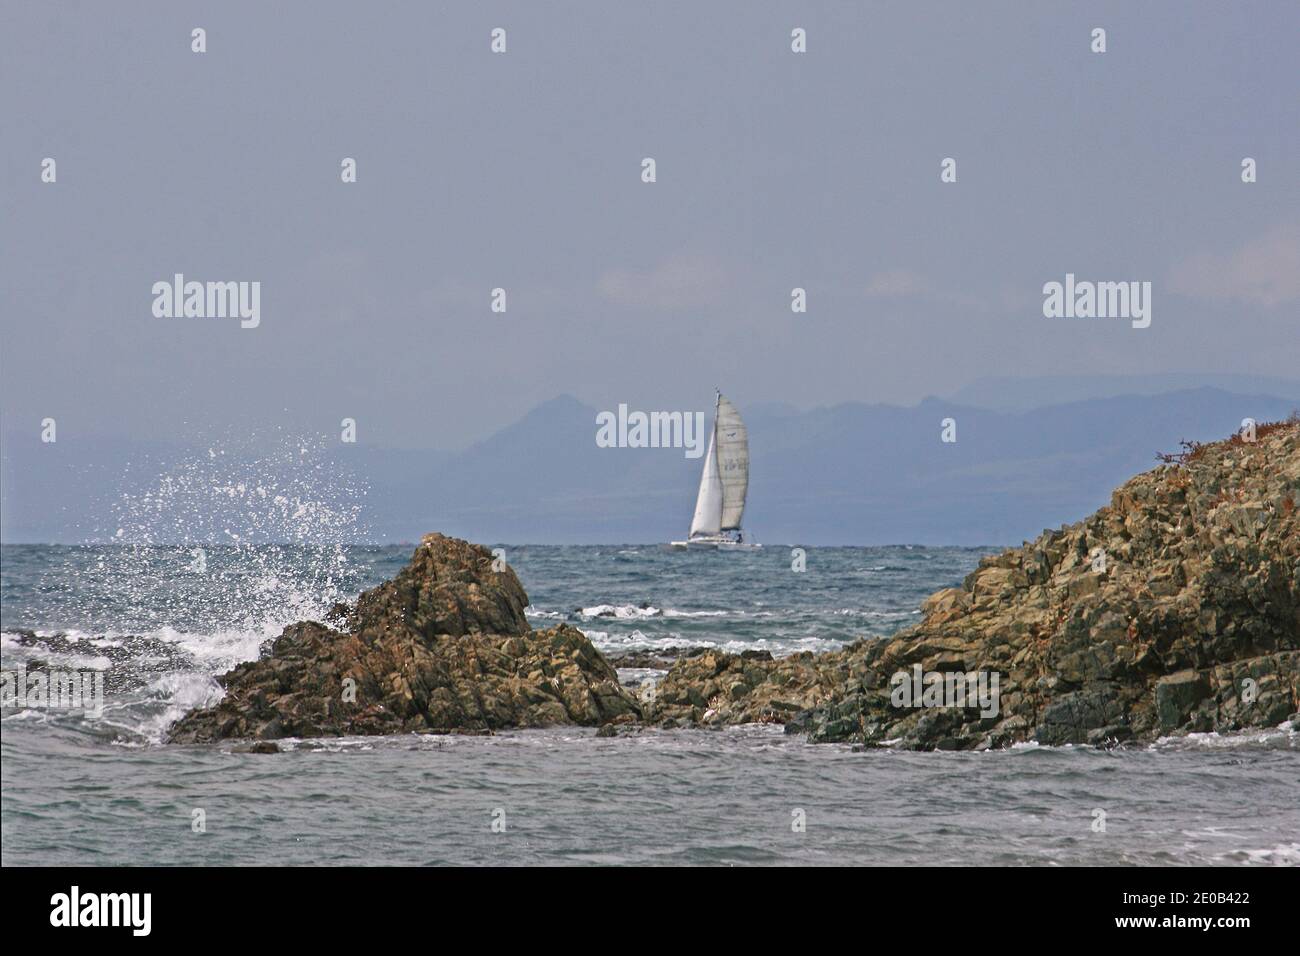 Uno yacht si avvicina alla parte aspro della costa dell'isola di Tabarca. Non è il posto migliore se ci sono venti onshore - una riva lee. Foto Stock